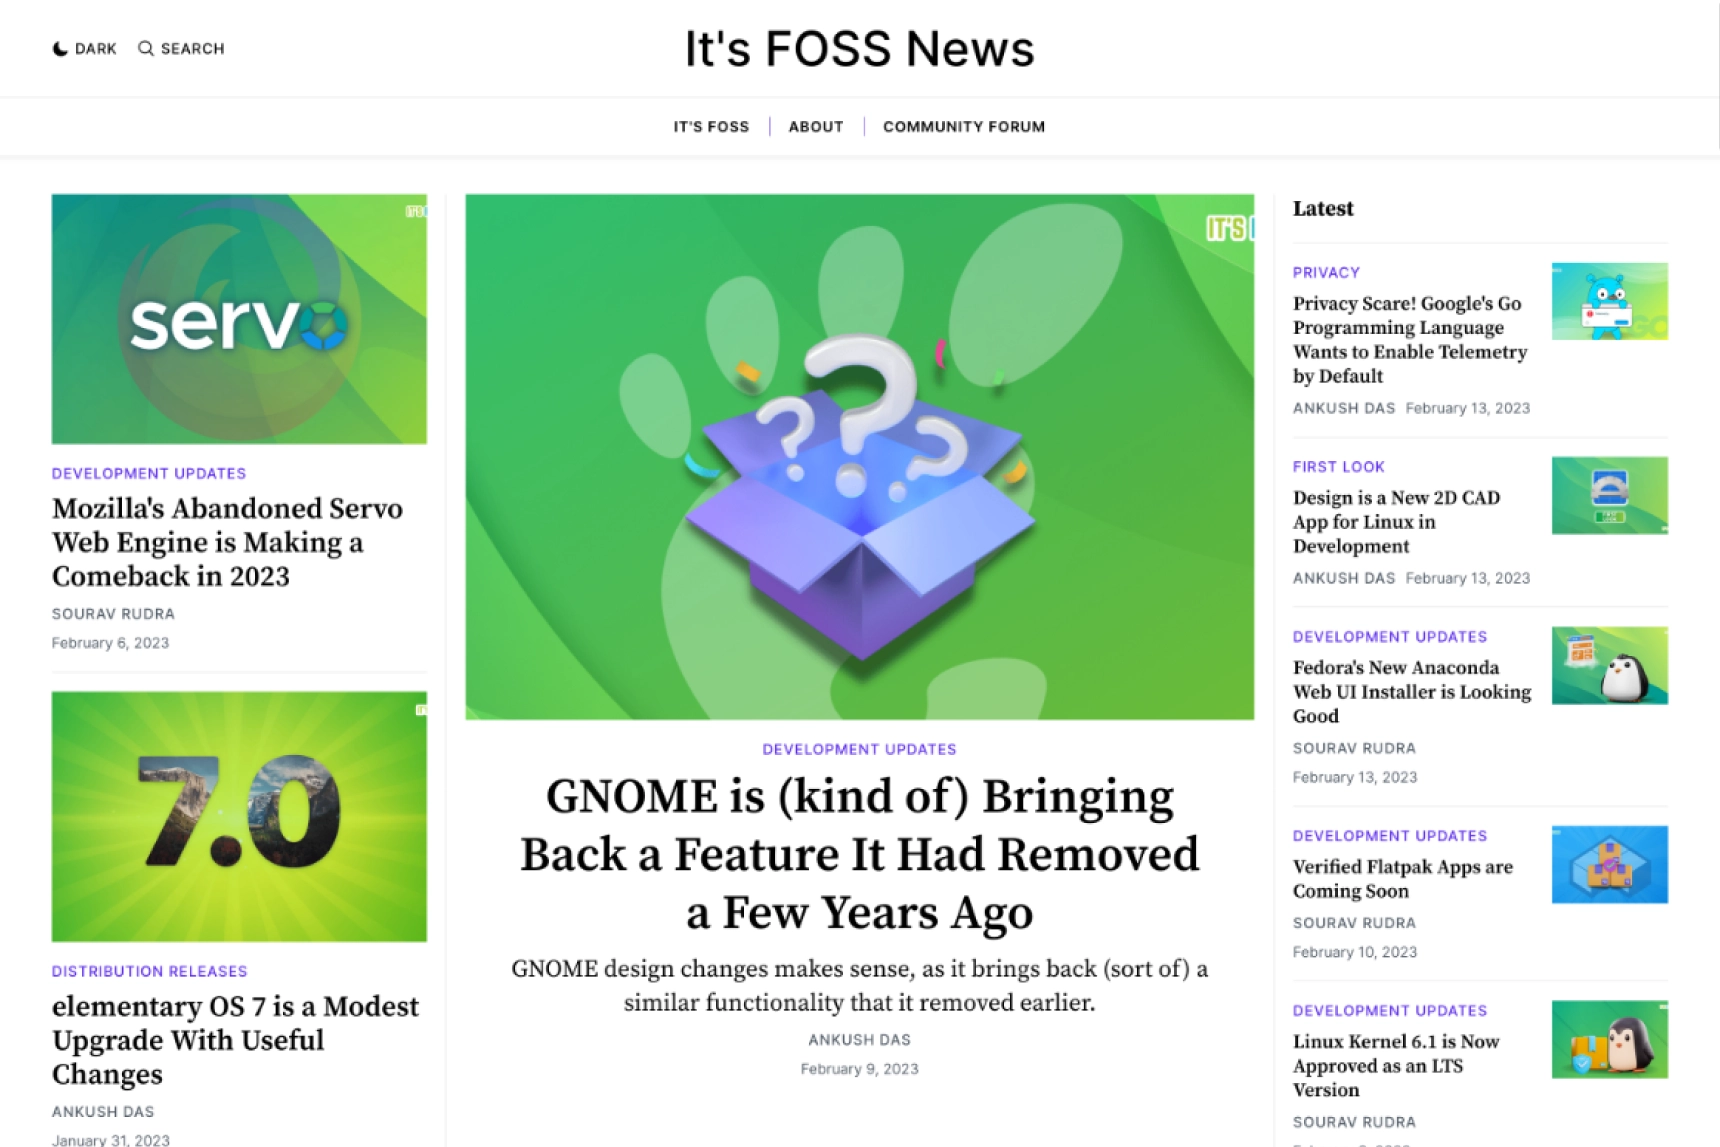 It's FOSS News